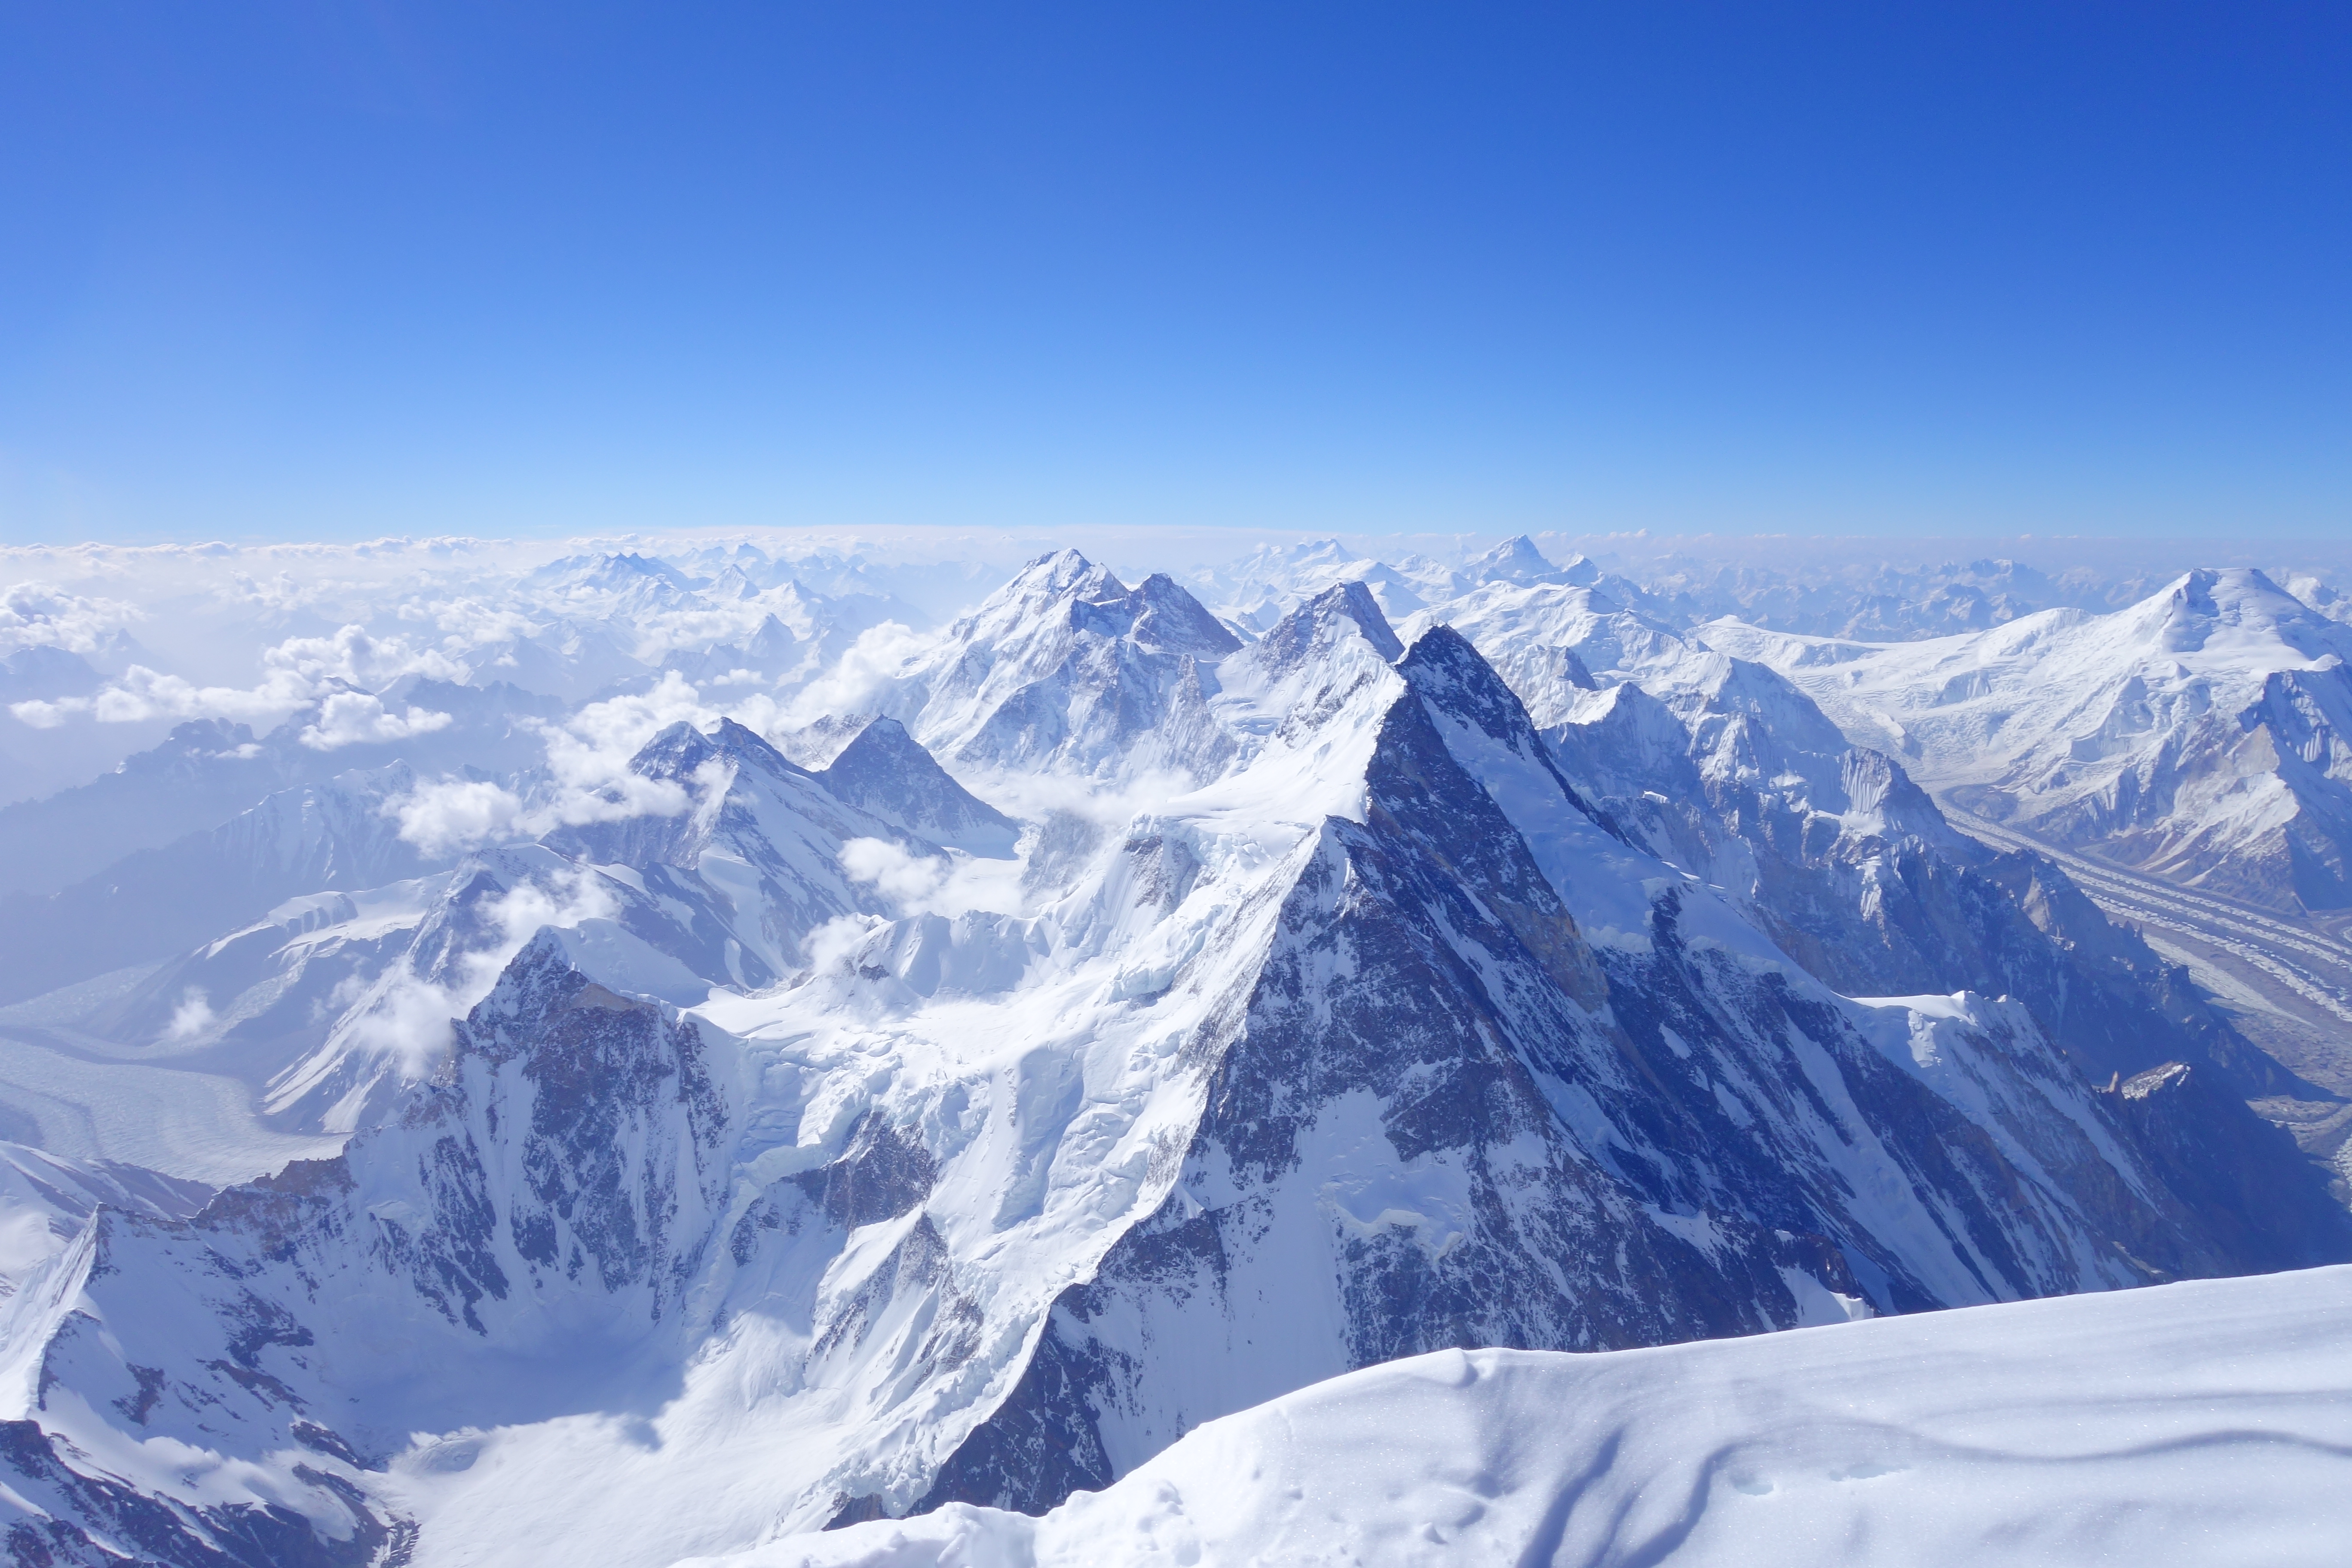 K2 Summit view